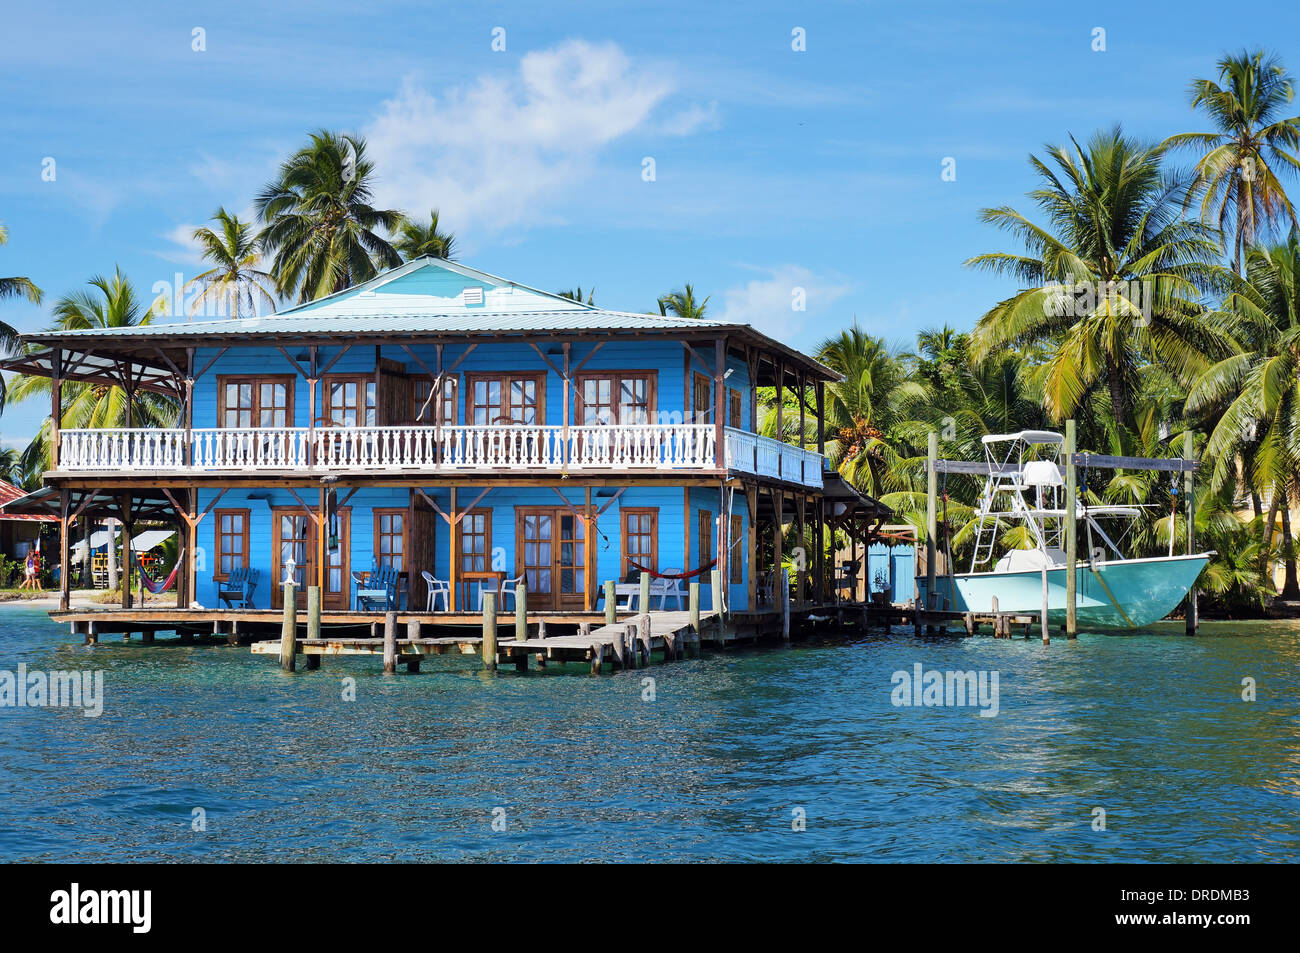 Belle maison tropicale sur pilotis sur la mer des Caraïbes avec un bateau et des cocotiers, le Panama Banque D'Images